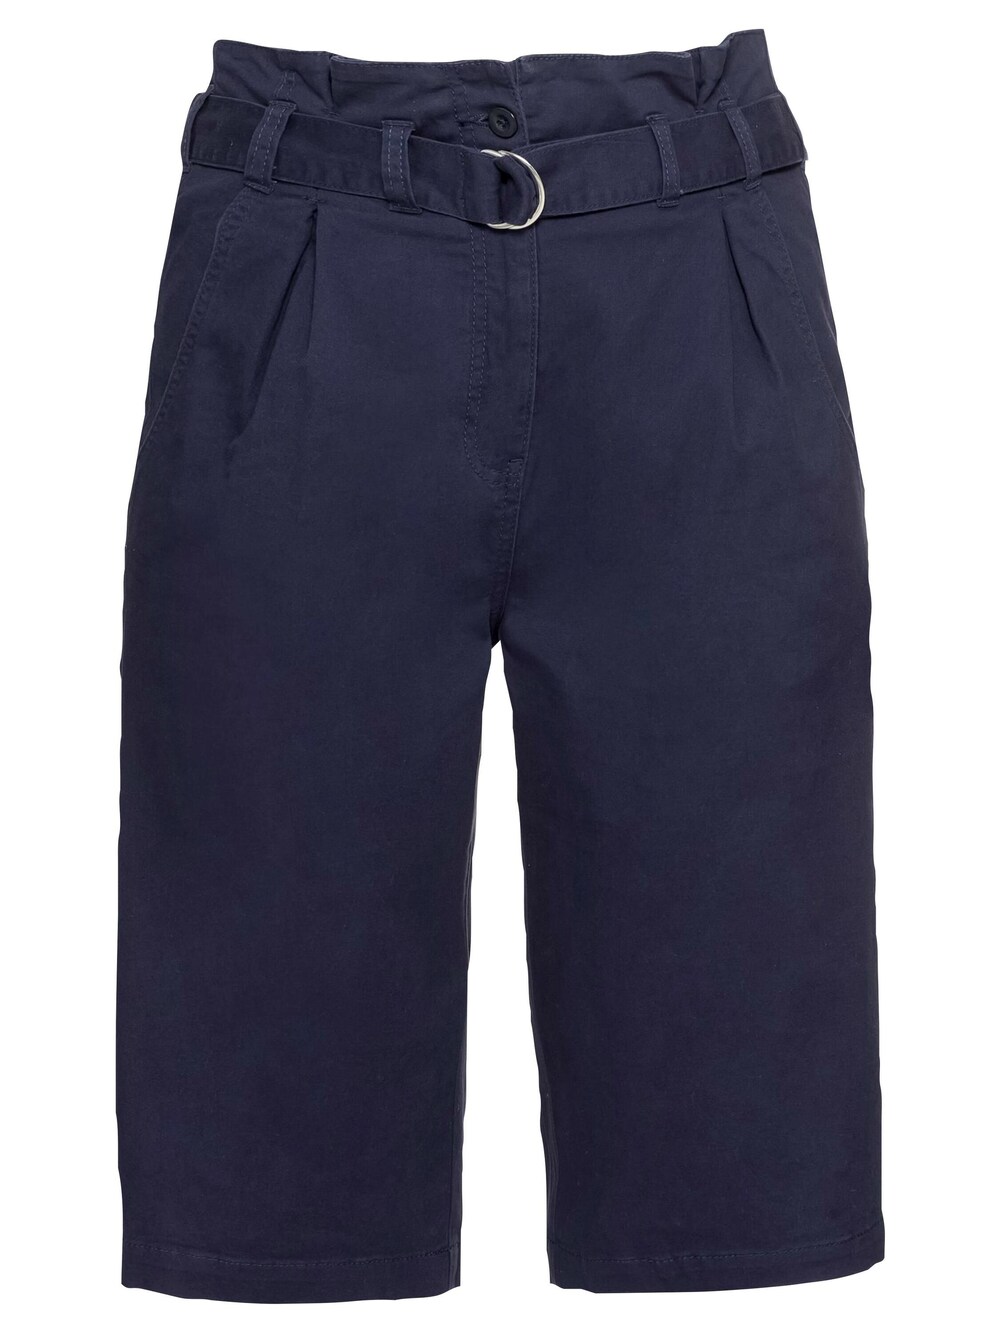 Обычные брюки со складками спереди Sheego, морской синий